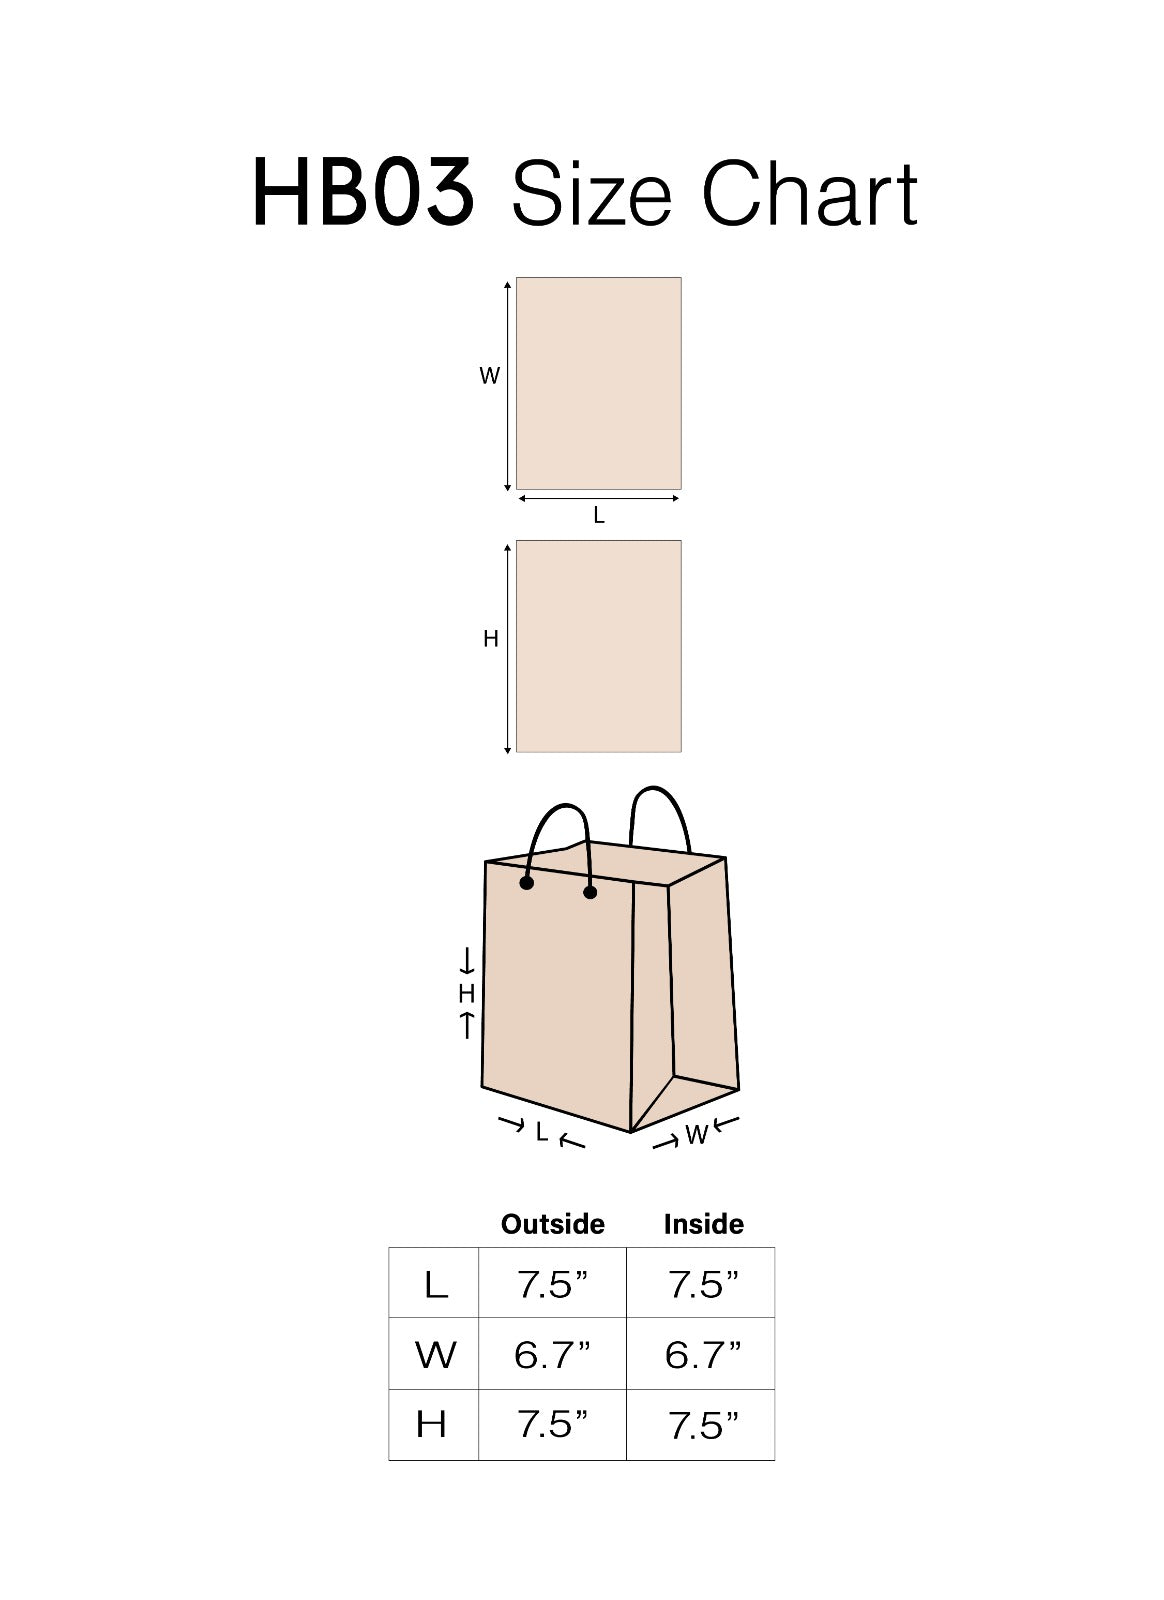 Craft Paper Bag Line Pattern - Craft Bag - Golden Silver Red - 7x5 Paper Bag